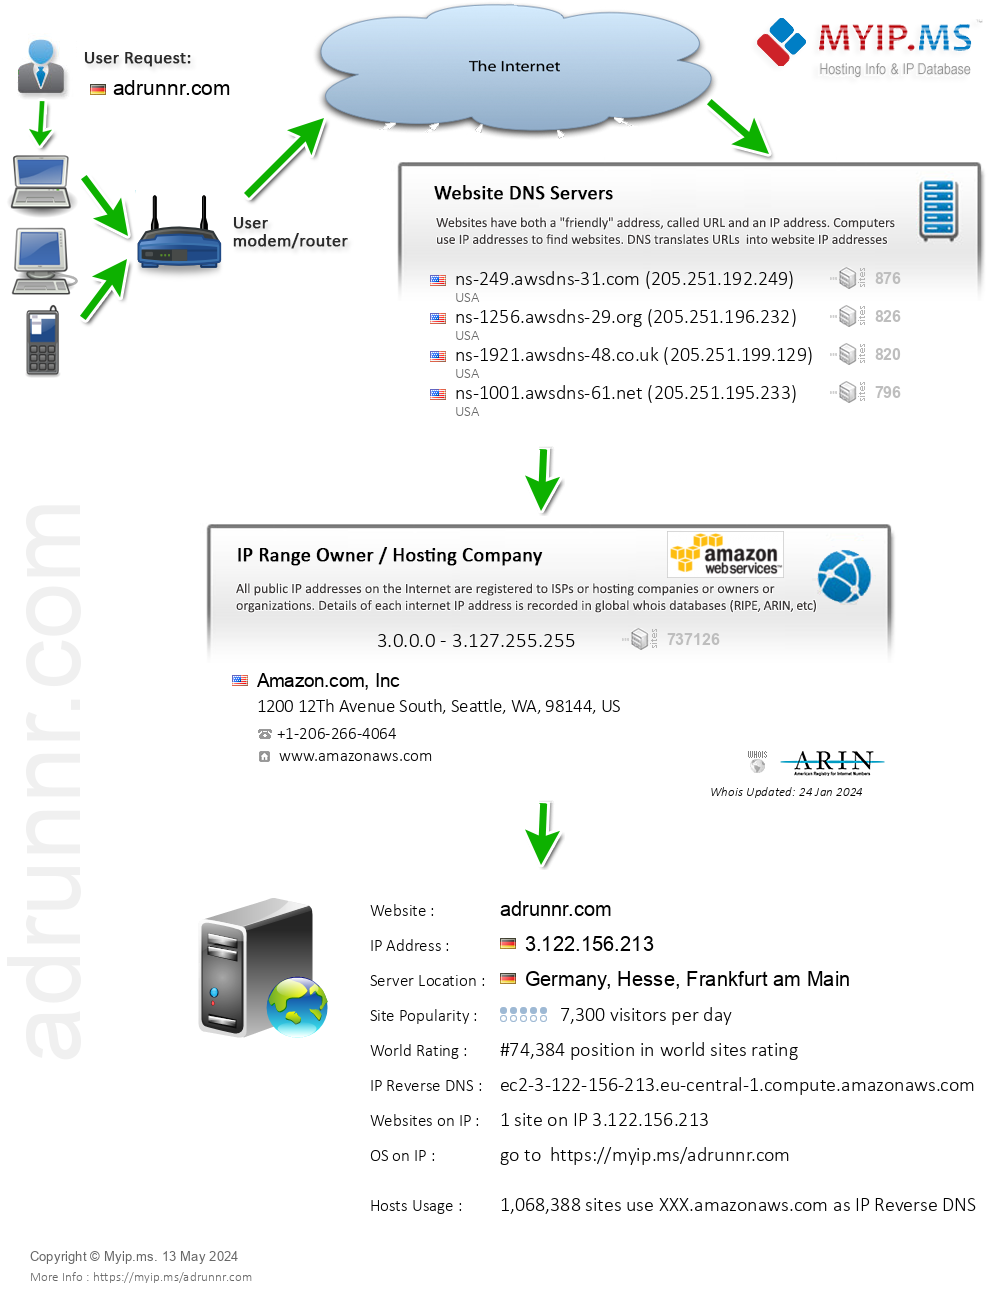 Adrunnr.com - Website Hosting Visual IP Diagram